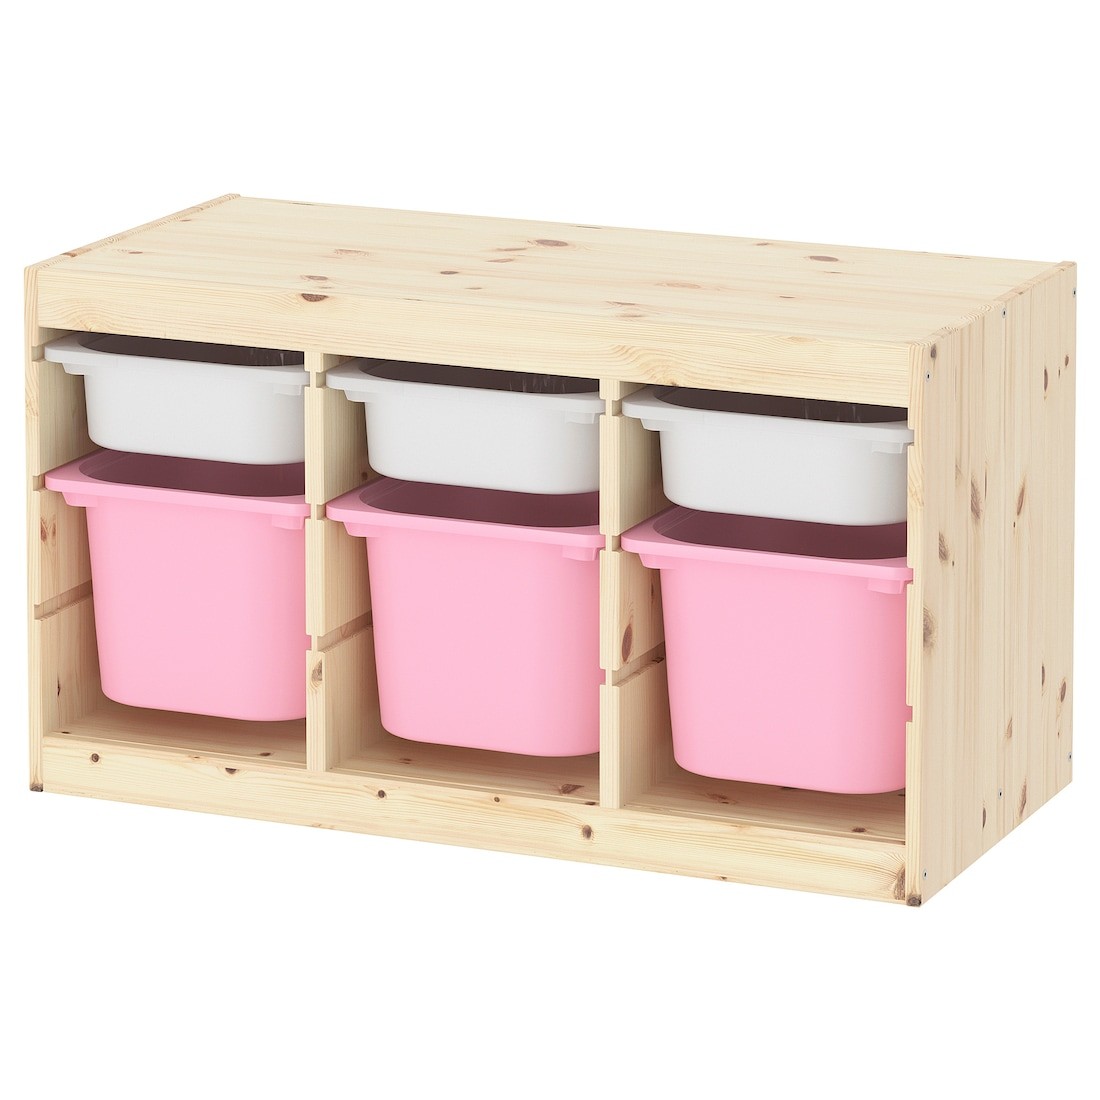 IKEA TROFAST ТРУФАСТ Комбинация для хранения + контейнеры, светлая беленая сосна белый / розовый, 93x44x52 cм 69331578 693.315.78